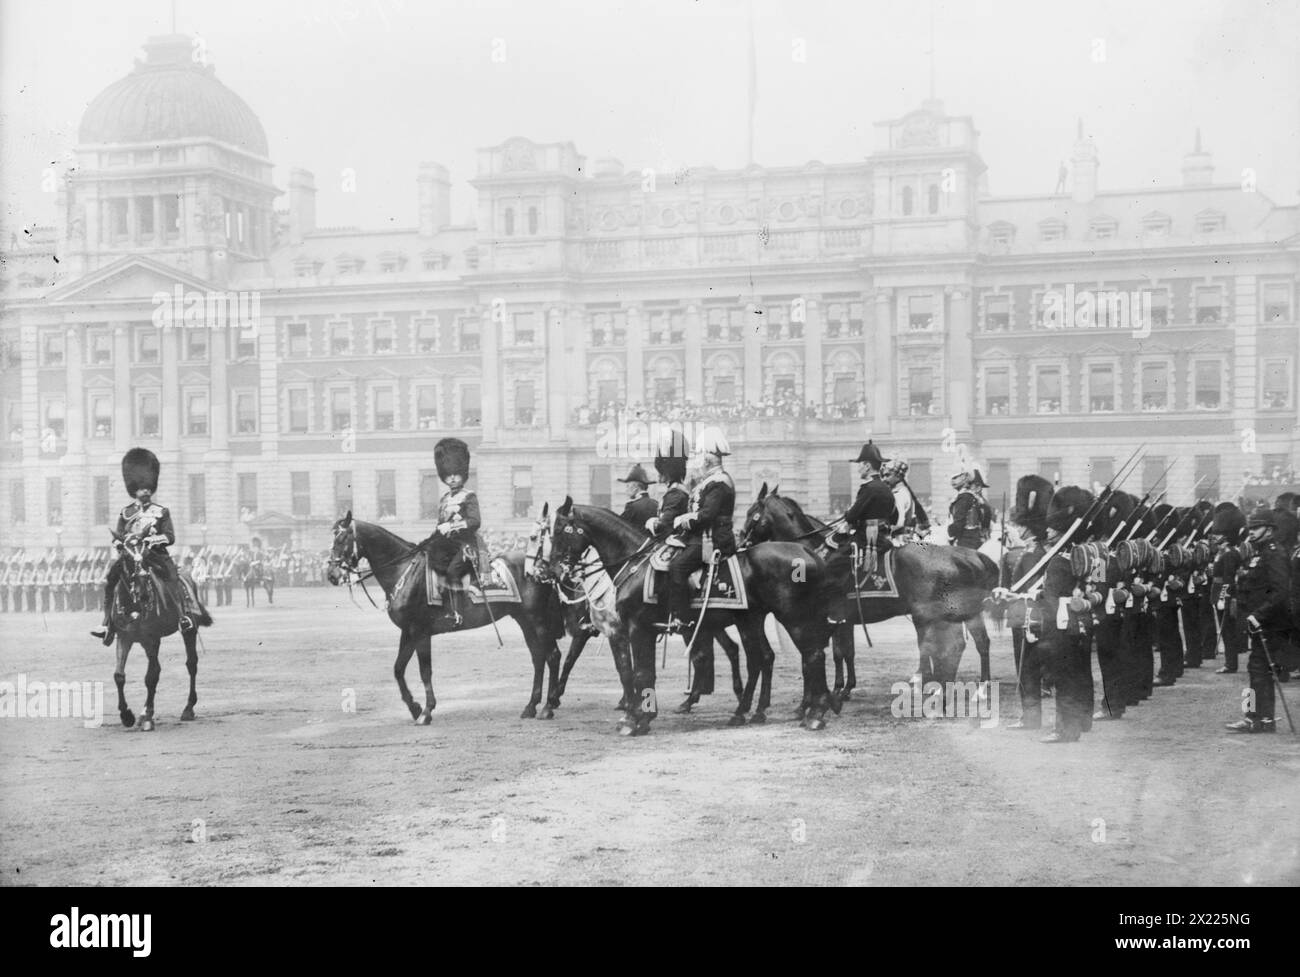 König Georg V. bei Trooping of Colors, Mai 1911. Zum ersten Mal im Mai 1911 vor dem Admiralty Extension Building. Sowohl der König als auch der Herzog von Connaught trugen die Uniform der Grenadiergarde. Auch der Maharaja von Bikaner nahm Teil. Stockfoto